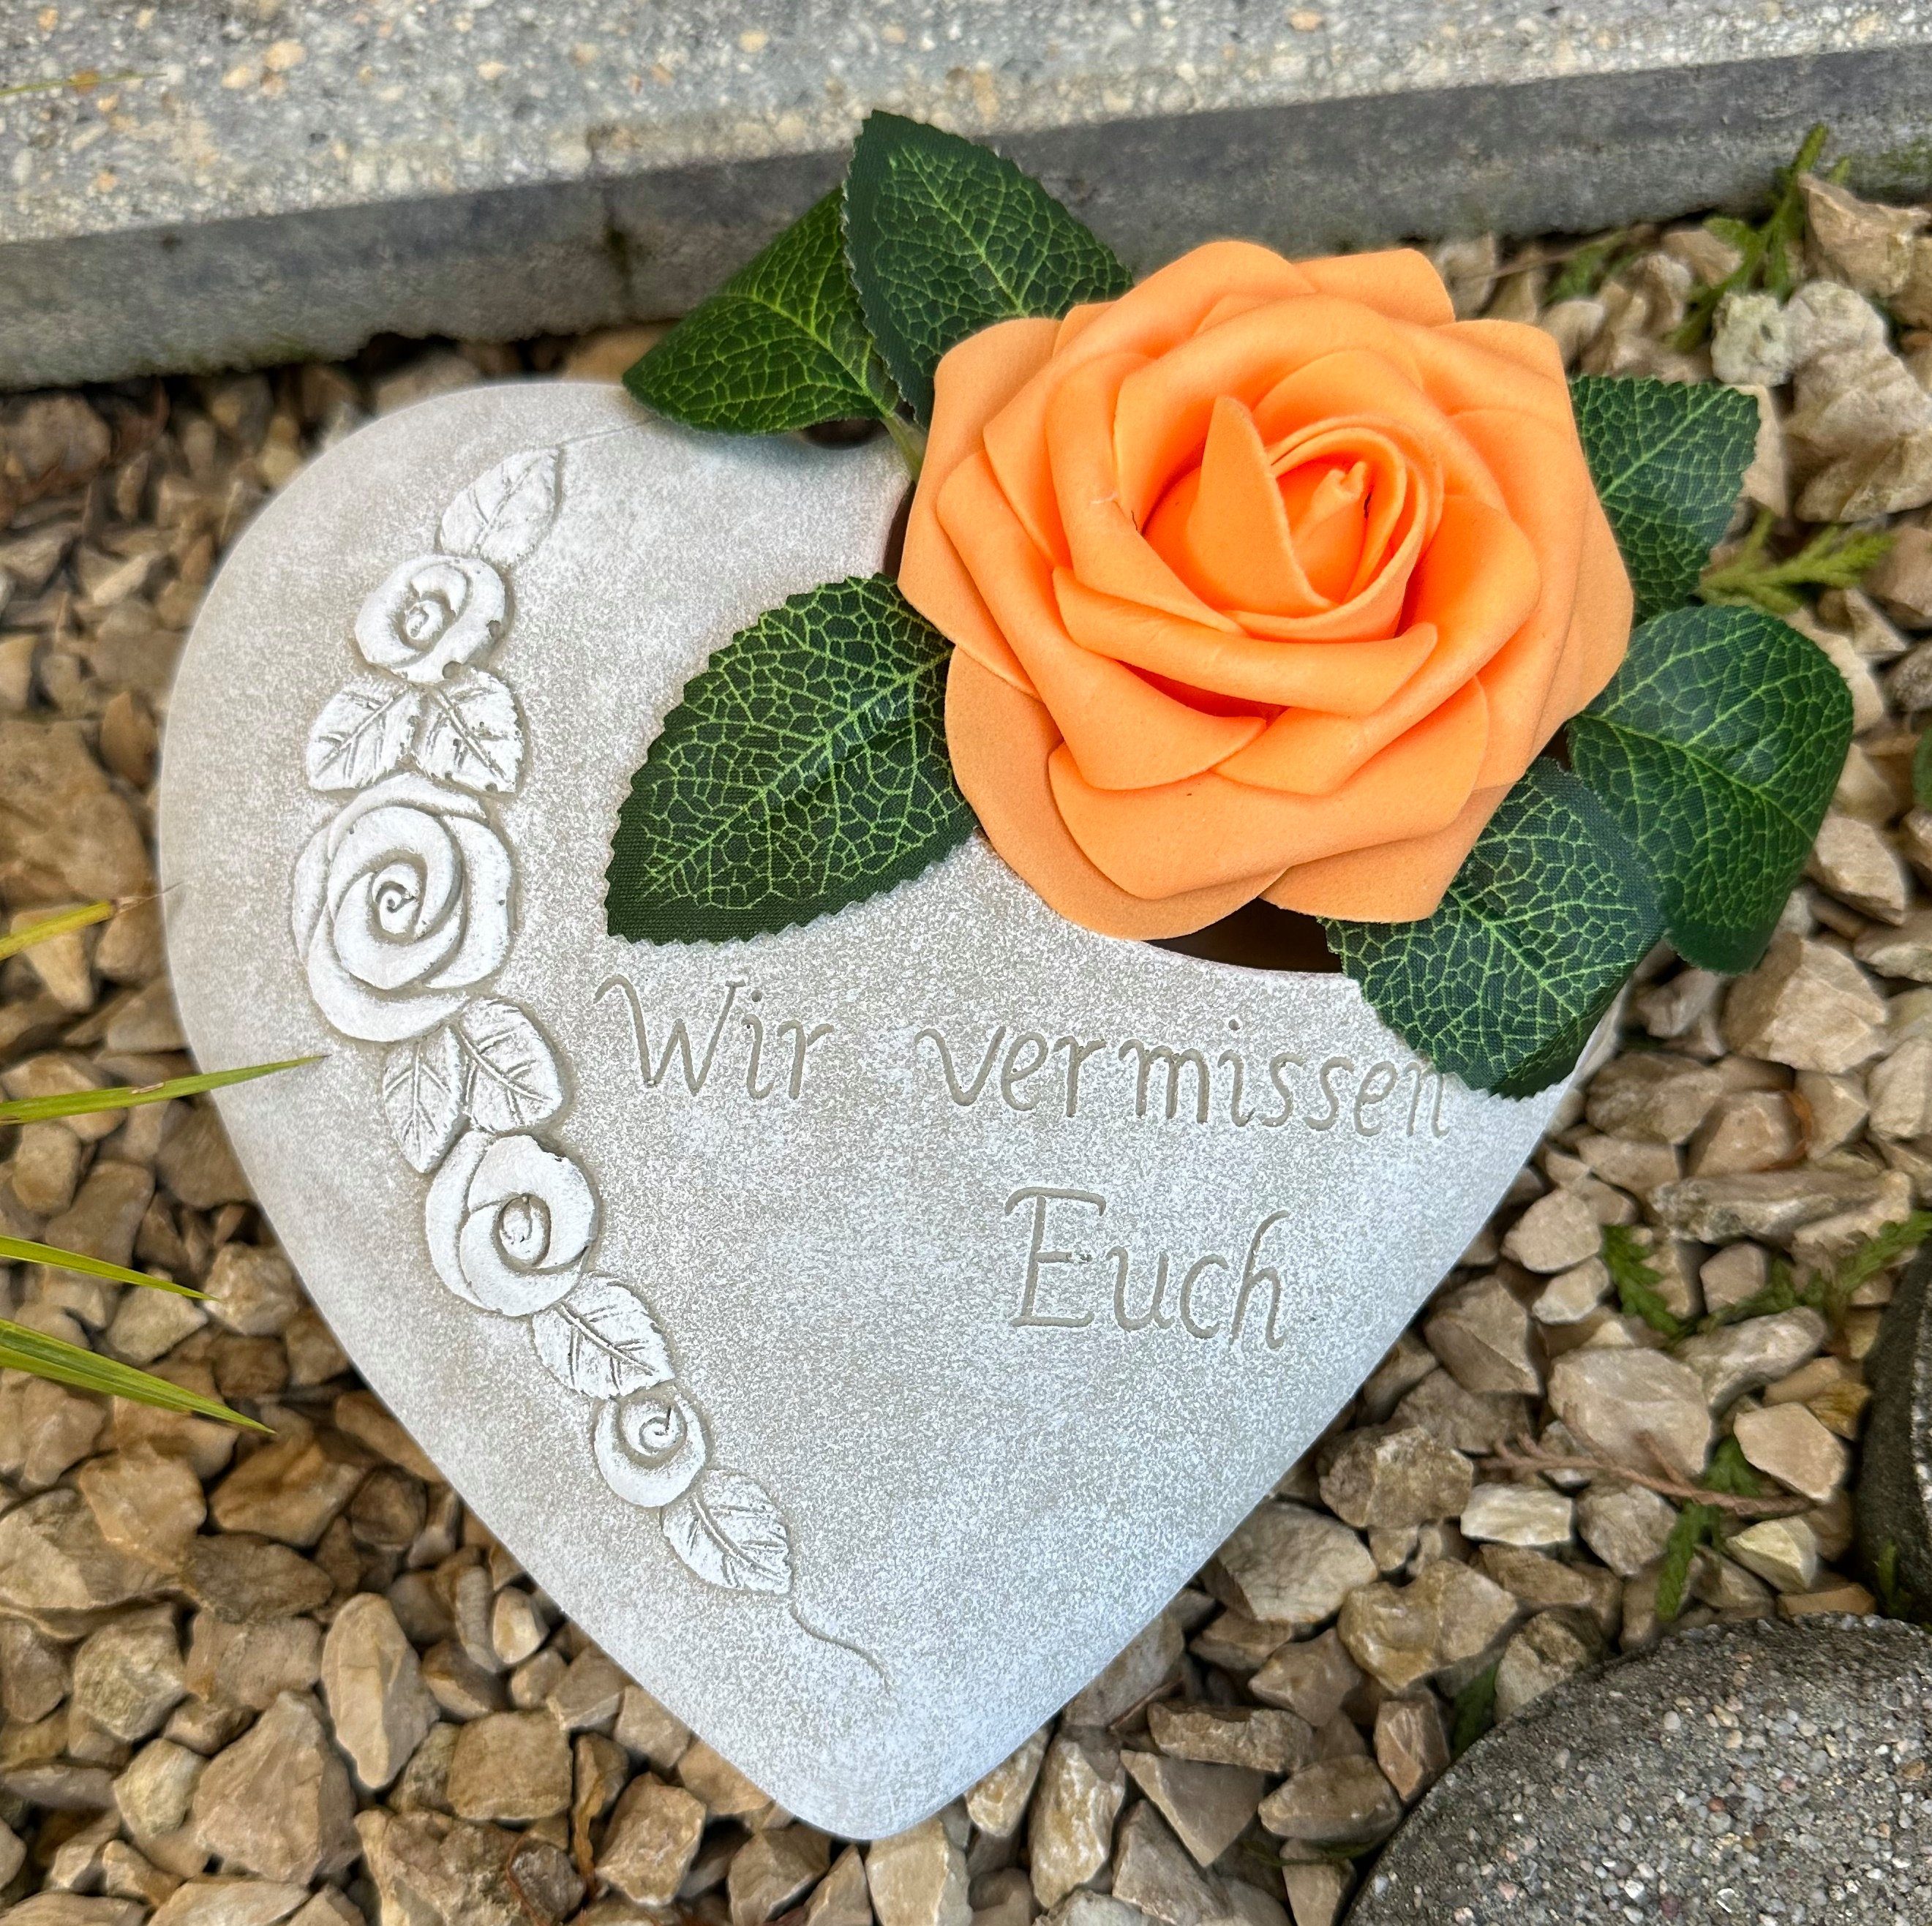 Radami Gartenfigur Grabherz Rosenranke - Wir vermissen Euch - Grabschmuck Gedenkstein